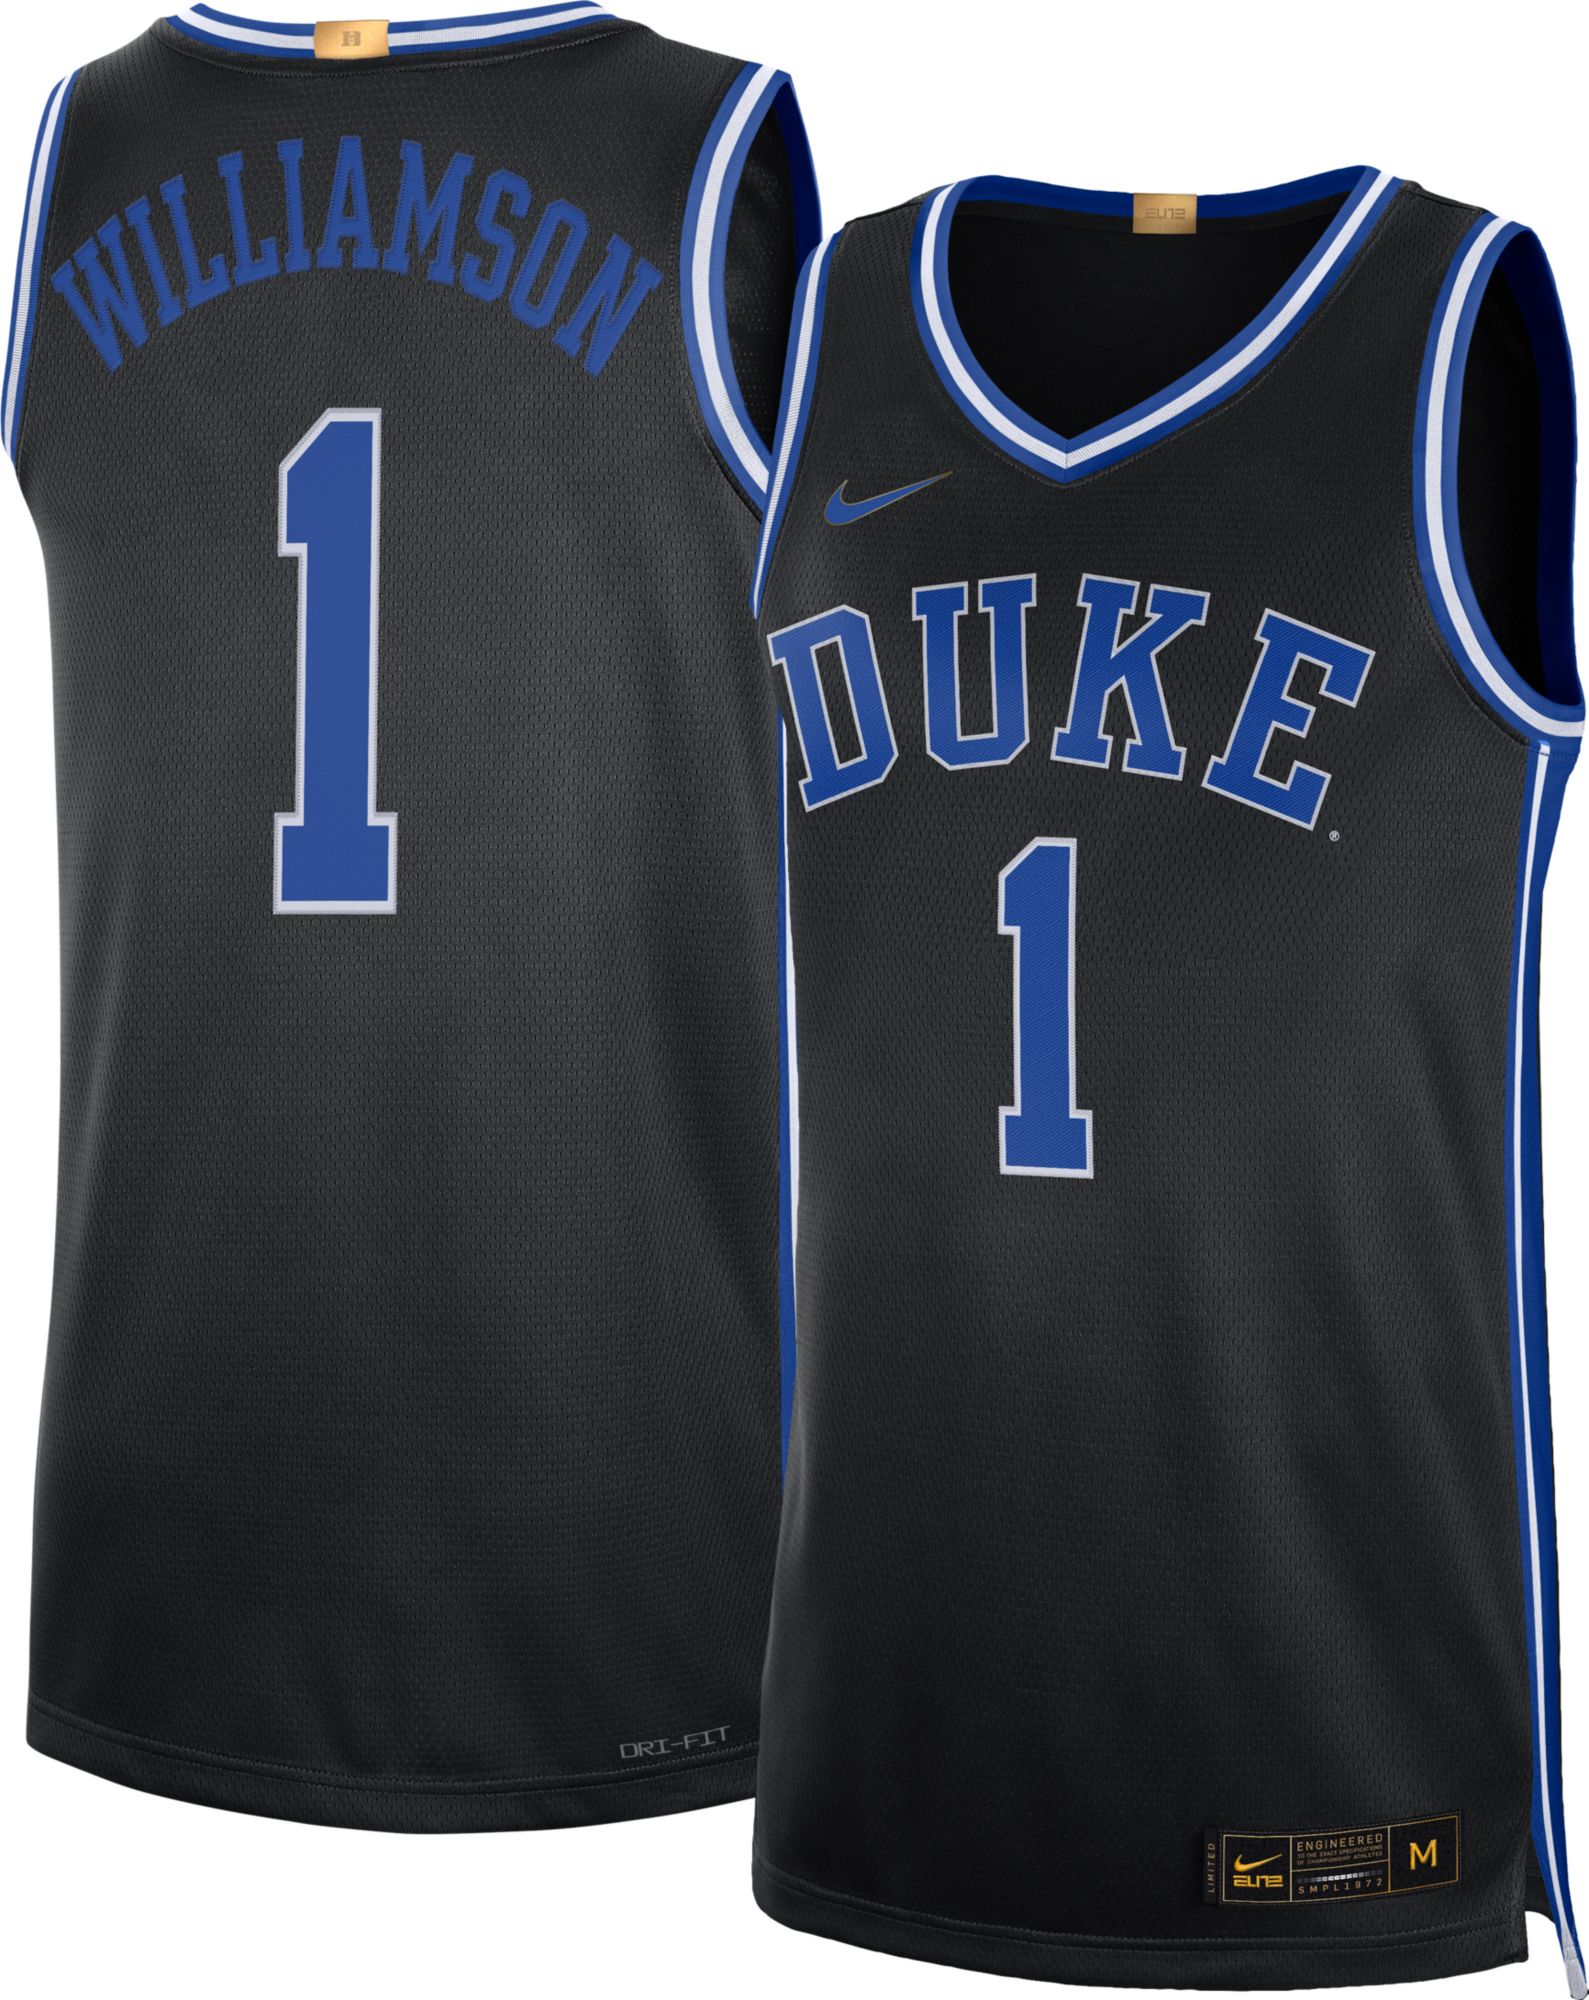 Duke Blue Devils #3 Replica Nike Basketball White Jersey Mens